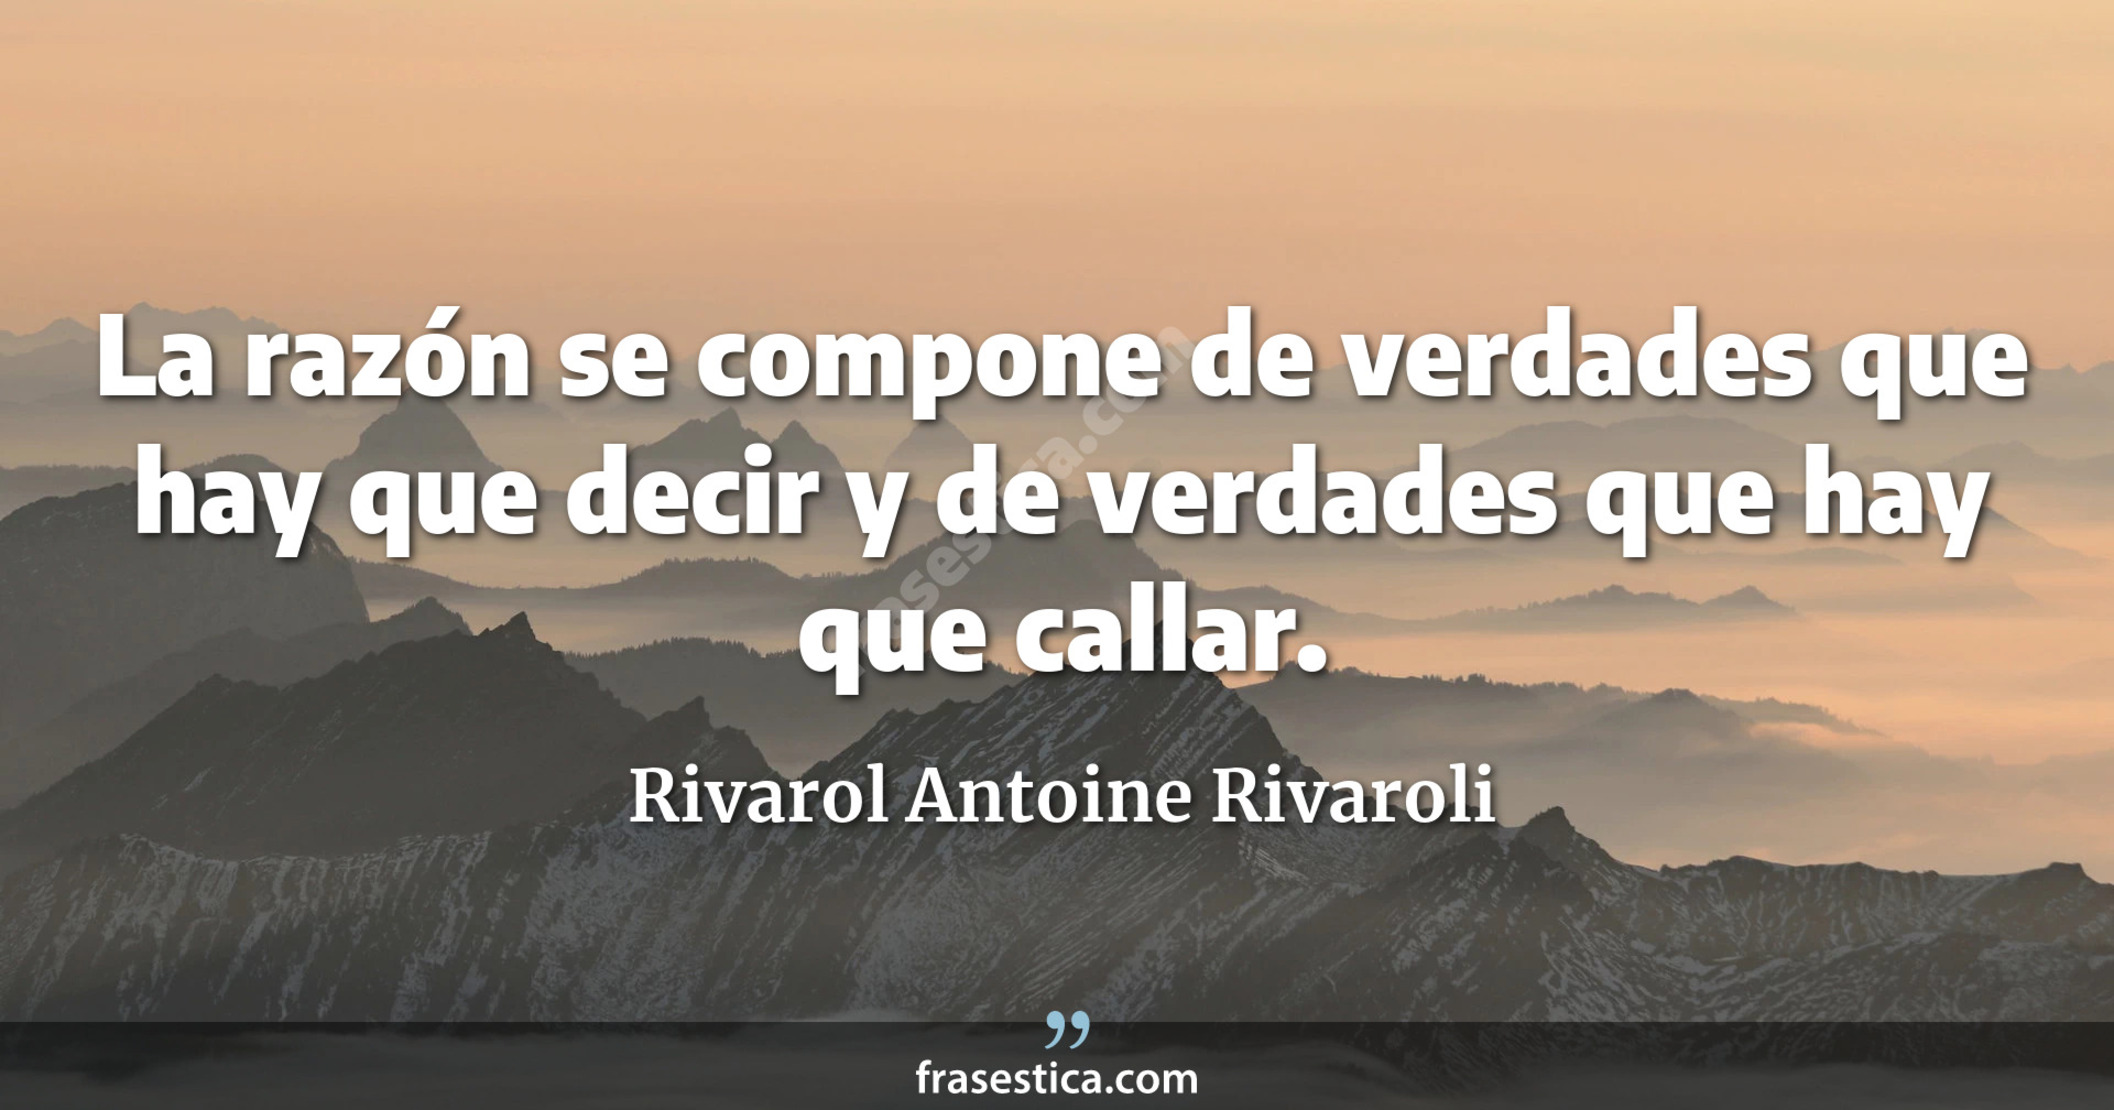 La razón se compone de verdades que hay que decir y de verdades que hay que callar. - Rivarol Antoine Rivaroli